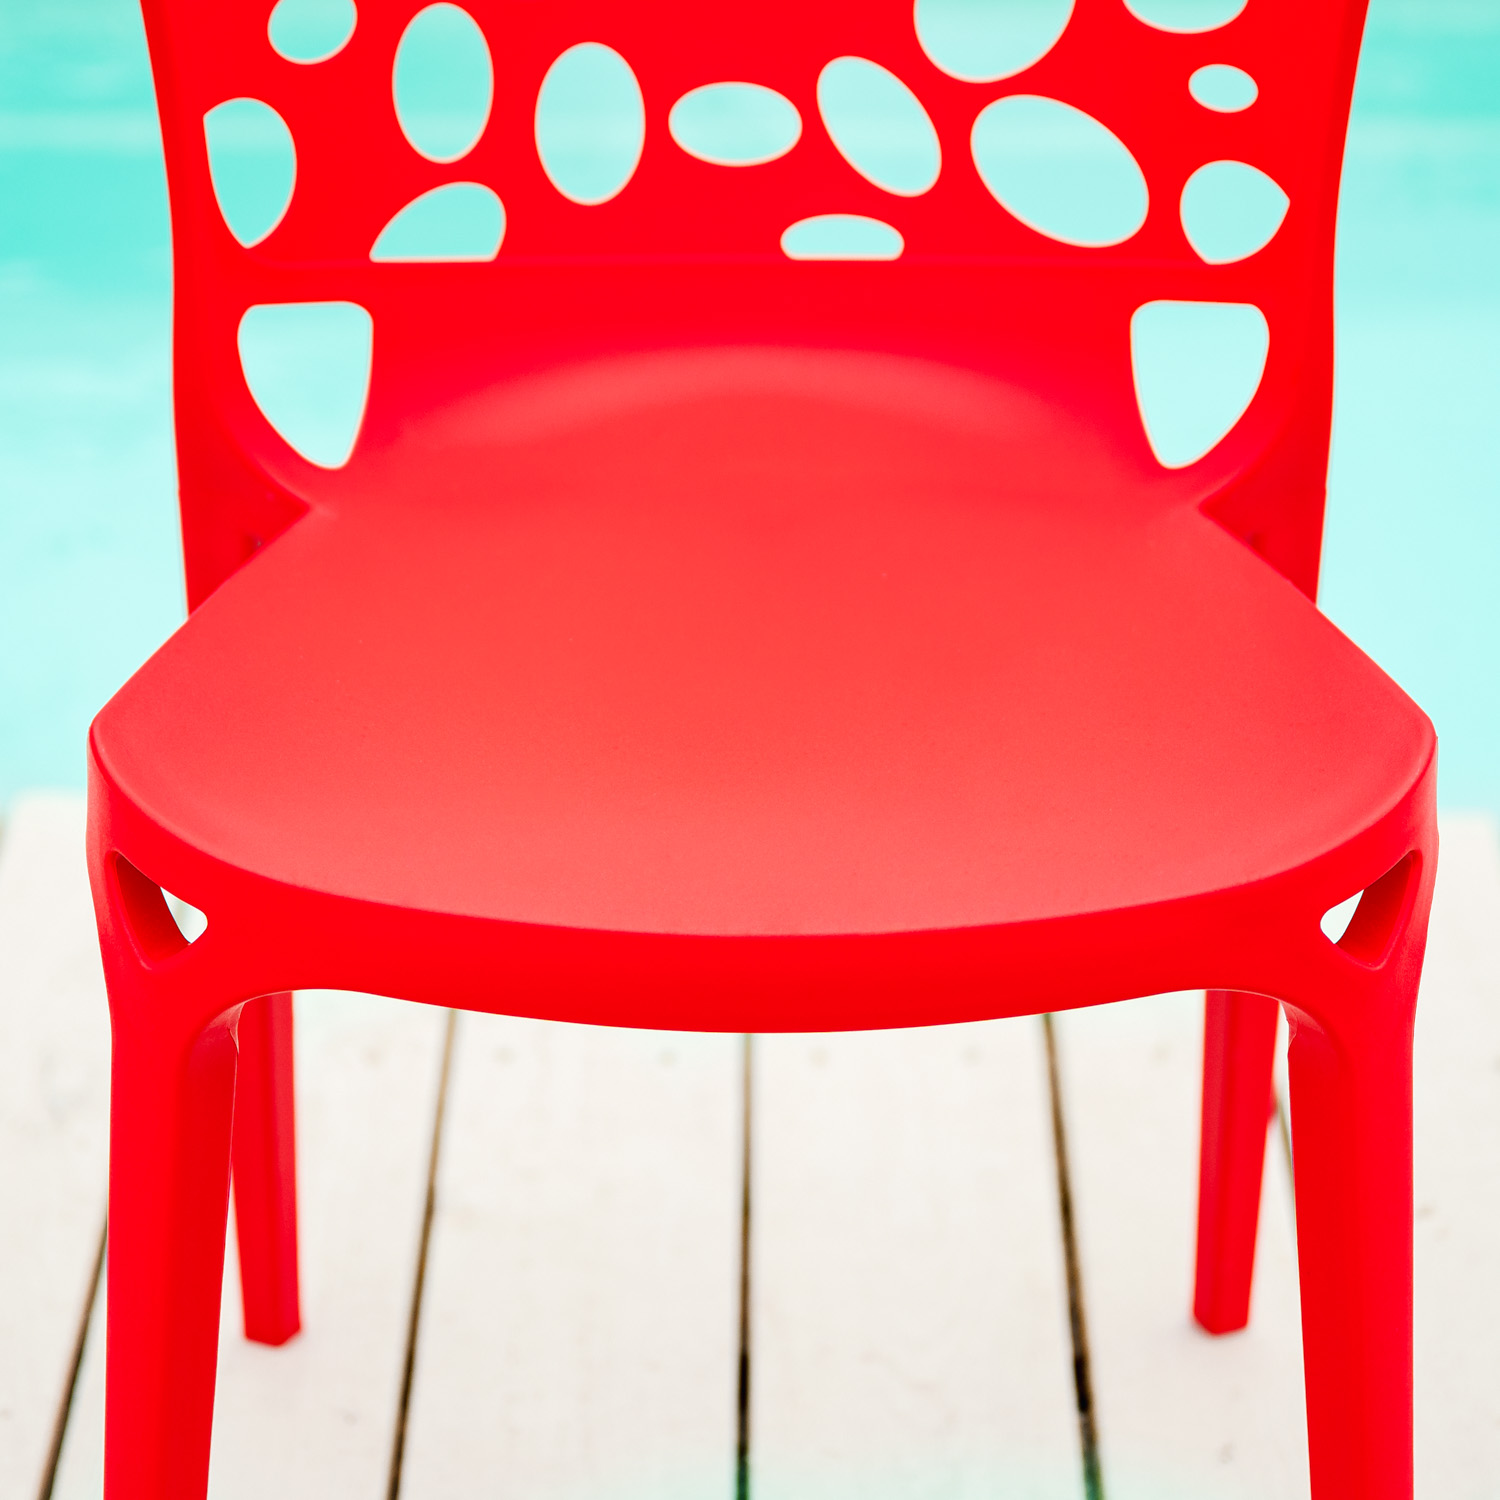 Gartenstuhl 4er Set Modern Rot Stühle Küchenstühle Kunststoff Stapelstühle Balkonstuhl Outdoor-Stuhl